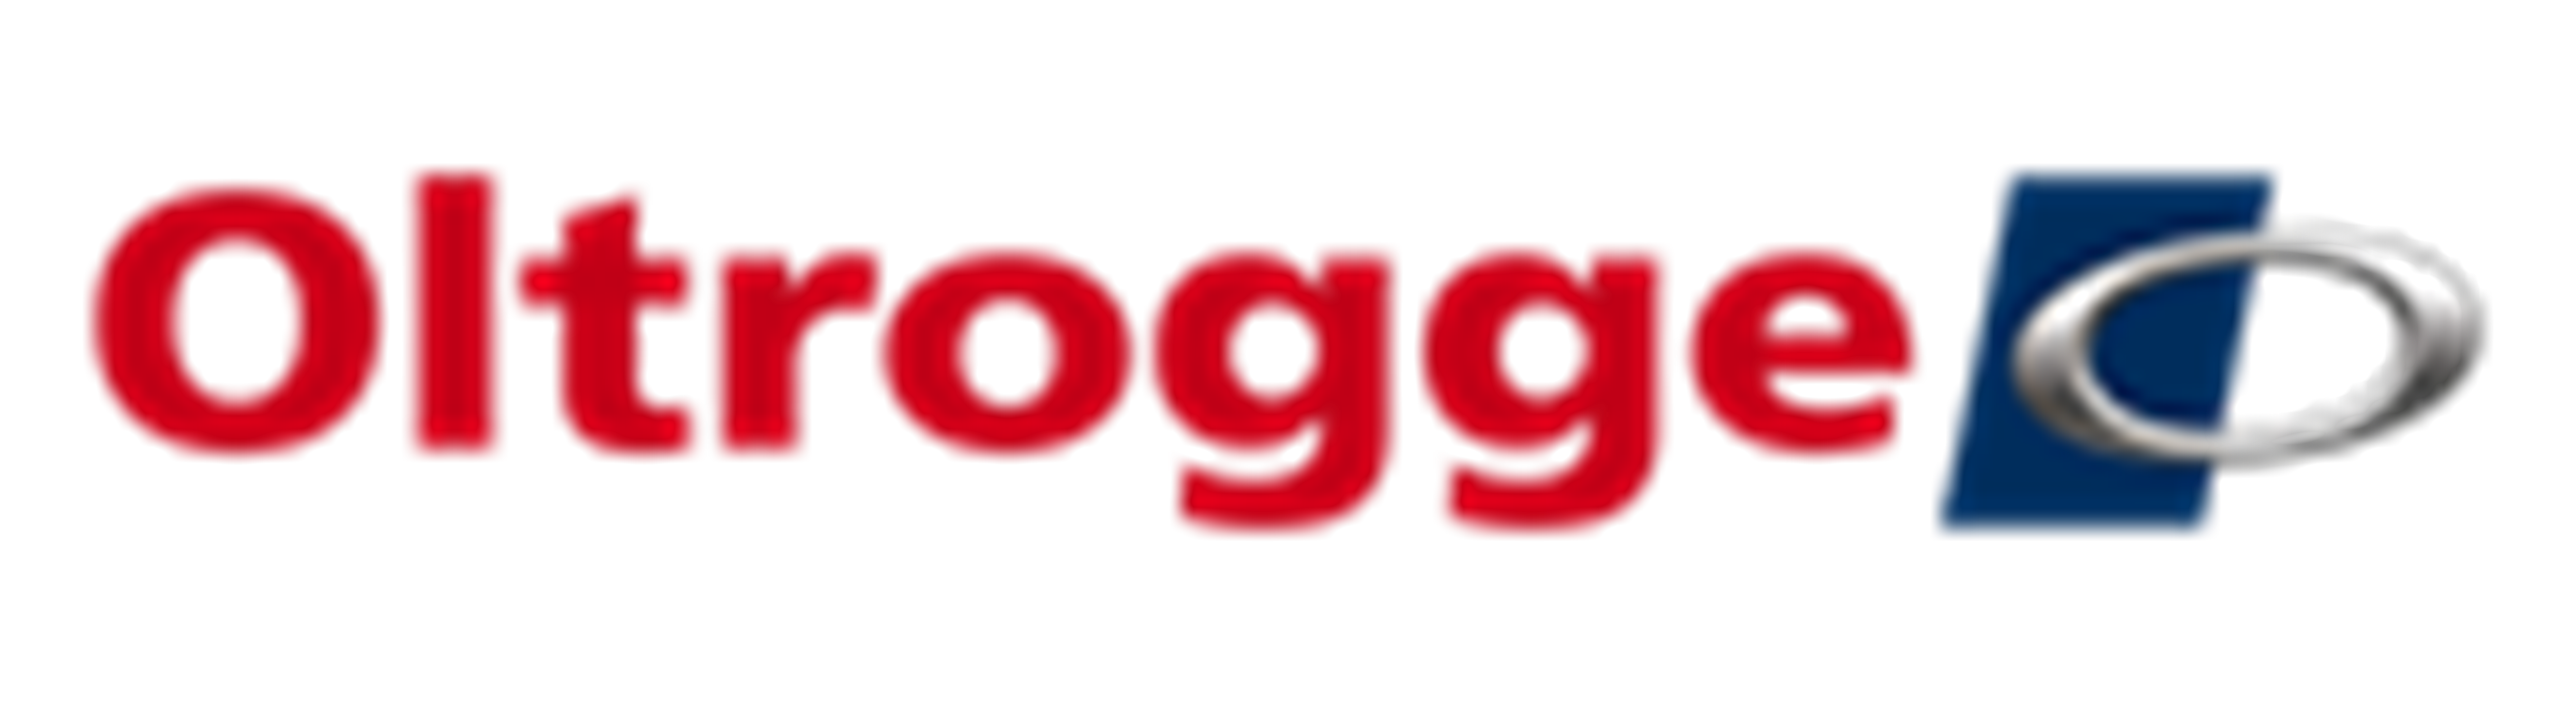 Oltrogge GmbH und Co. KG